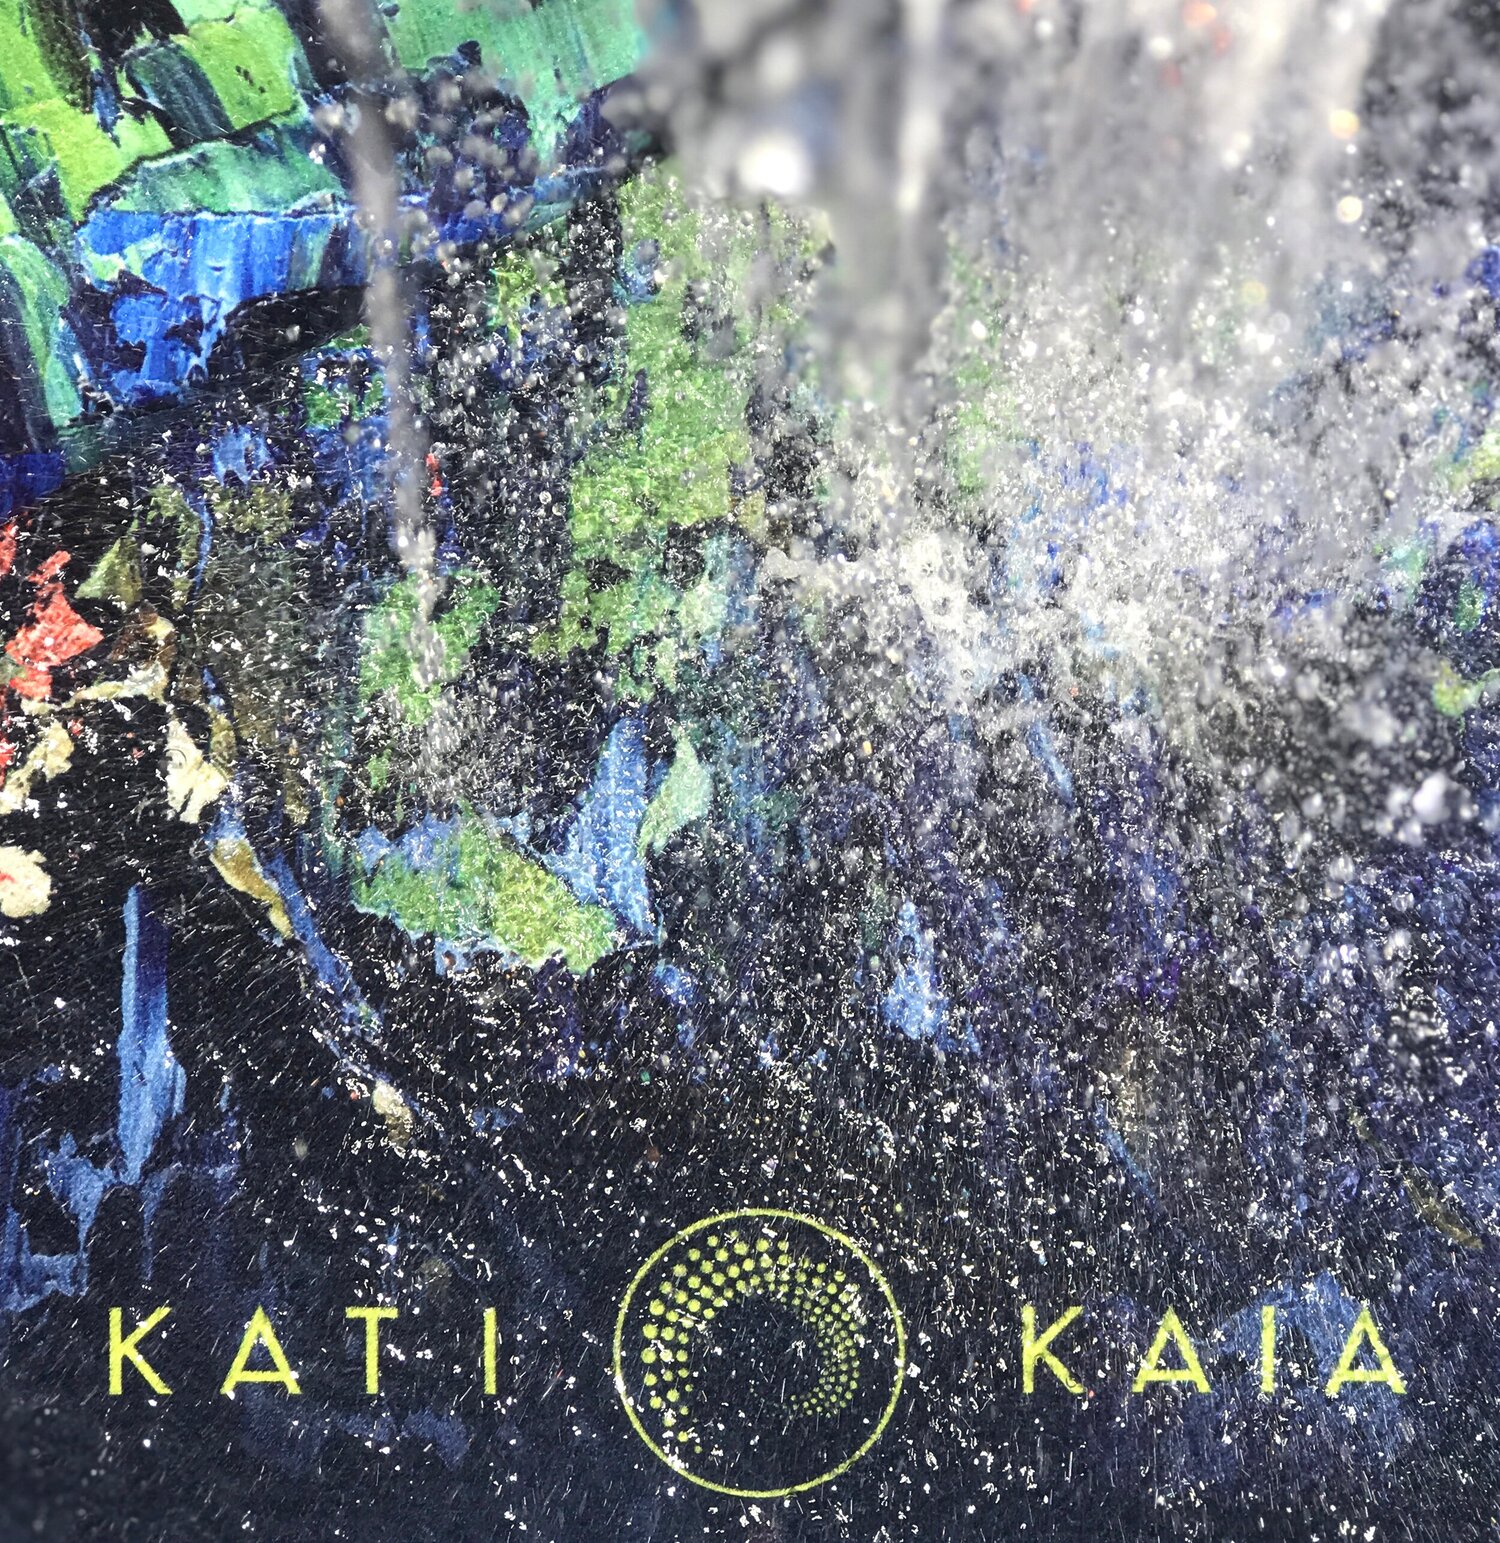 All Kati Kaia mats are machine and hand washable.